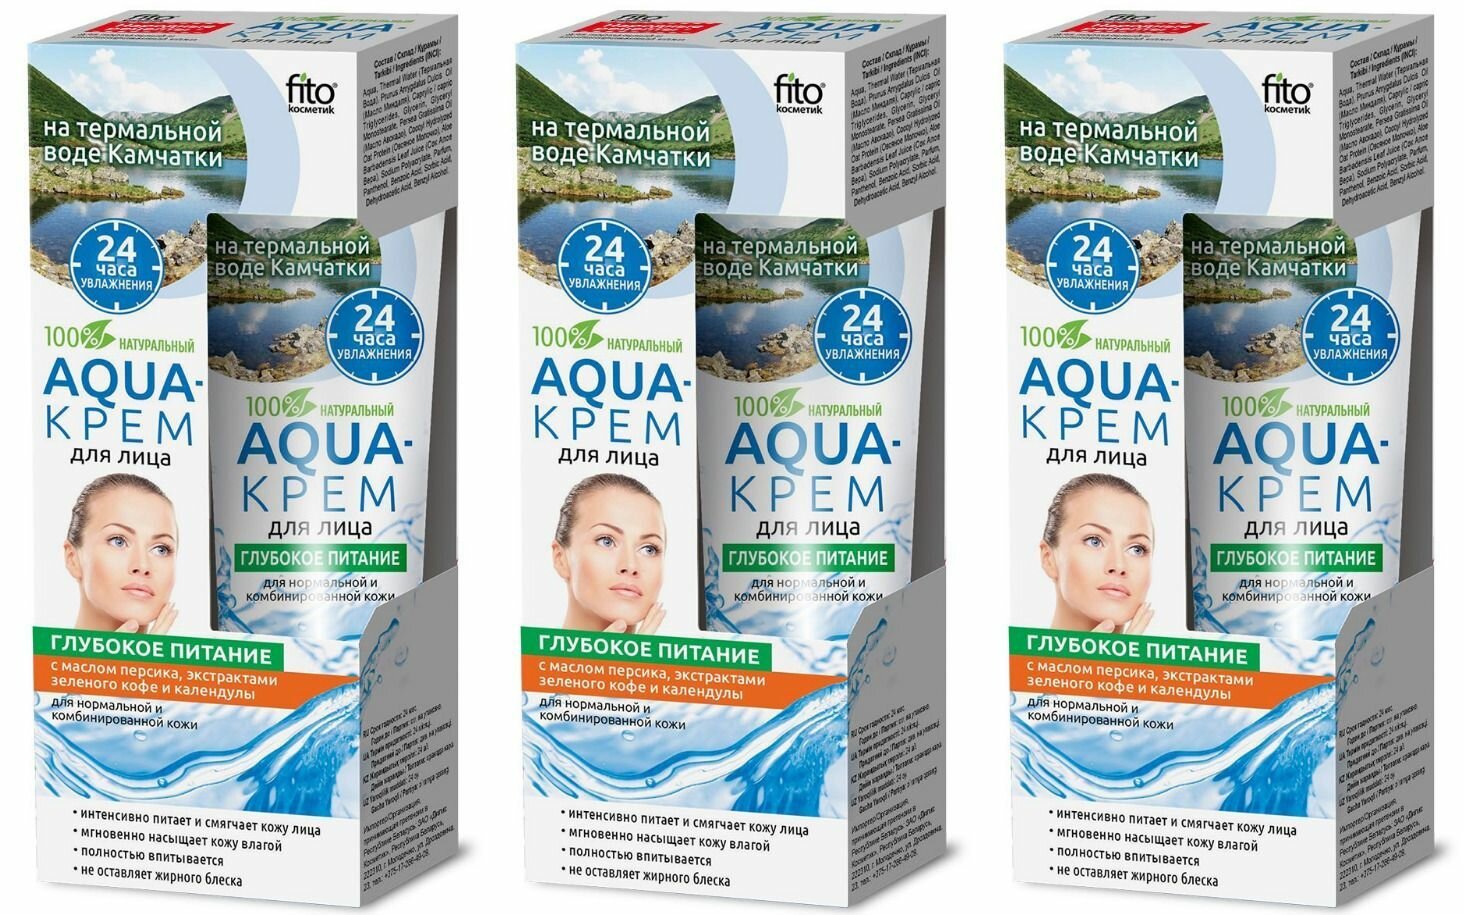 Fito Косметик Aqua-крем для лица Народные Рецепты, Глубокое питание, 45 мл, 3 шт